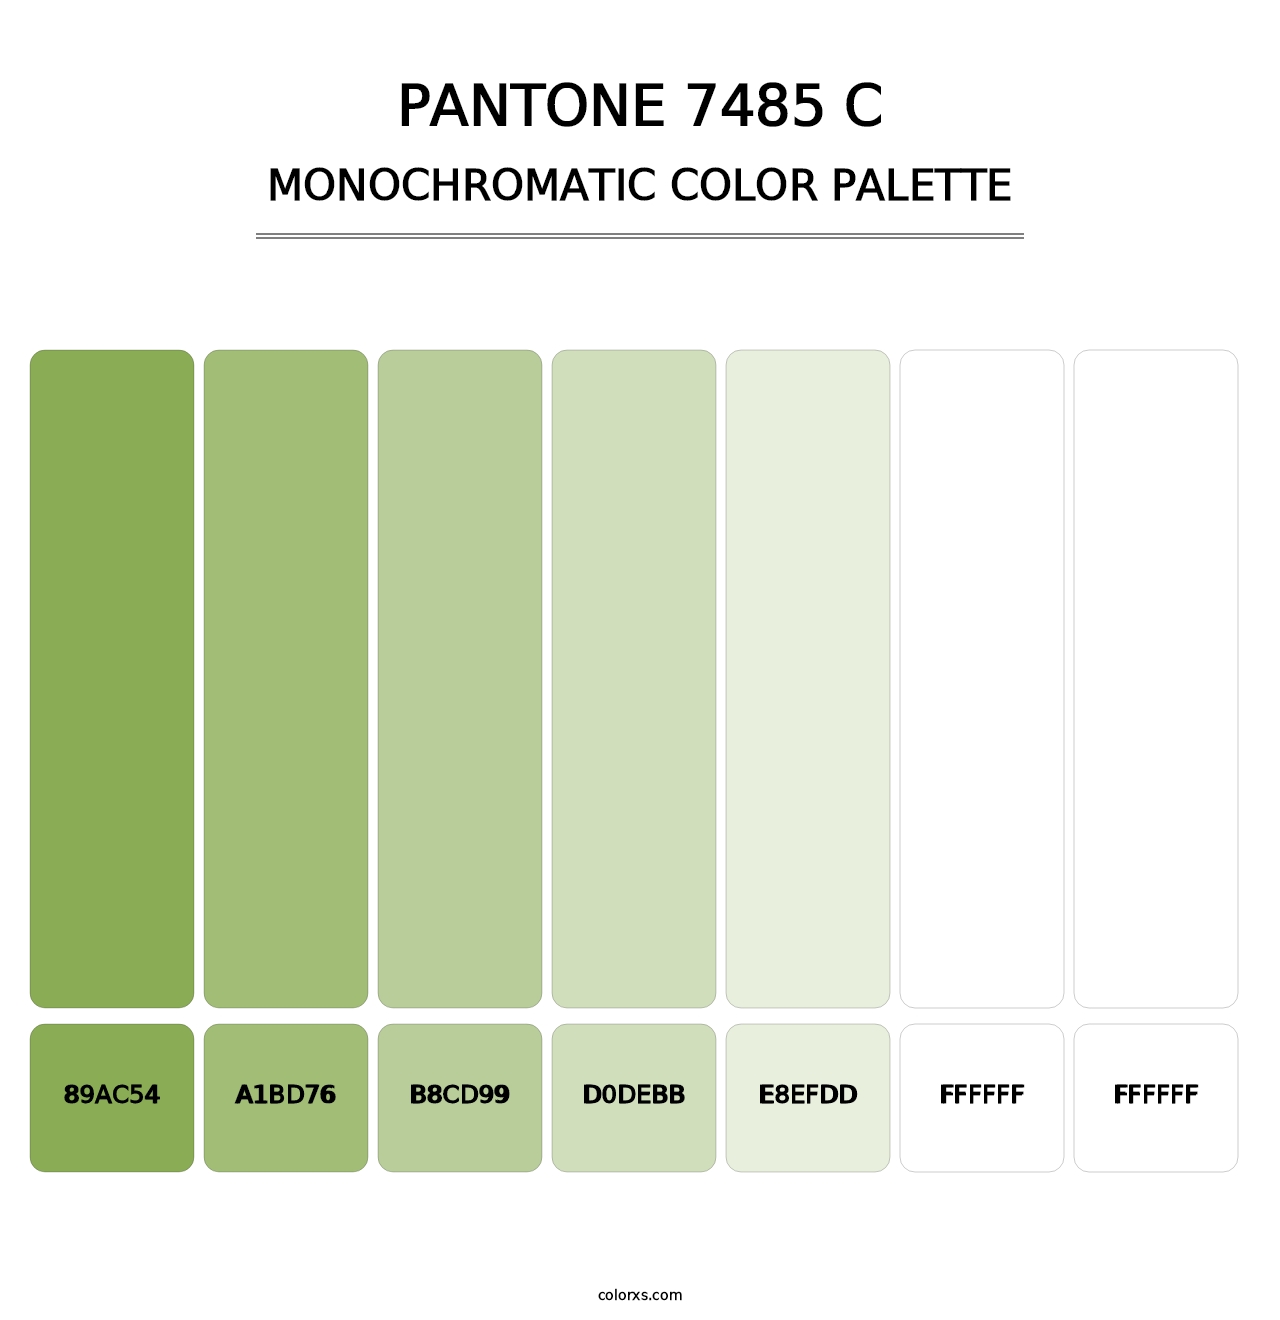 PANTONE 7485 C - Monochromatic Color Palette